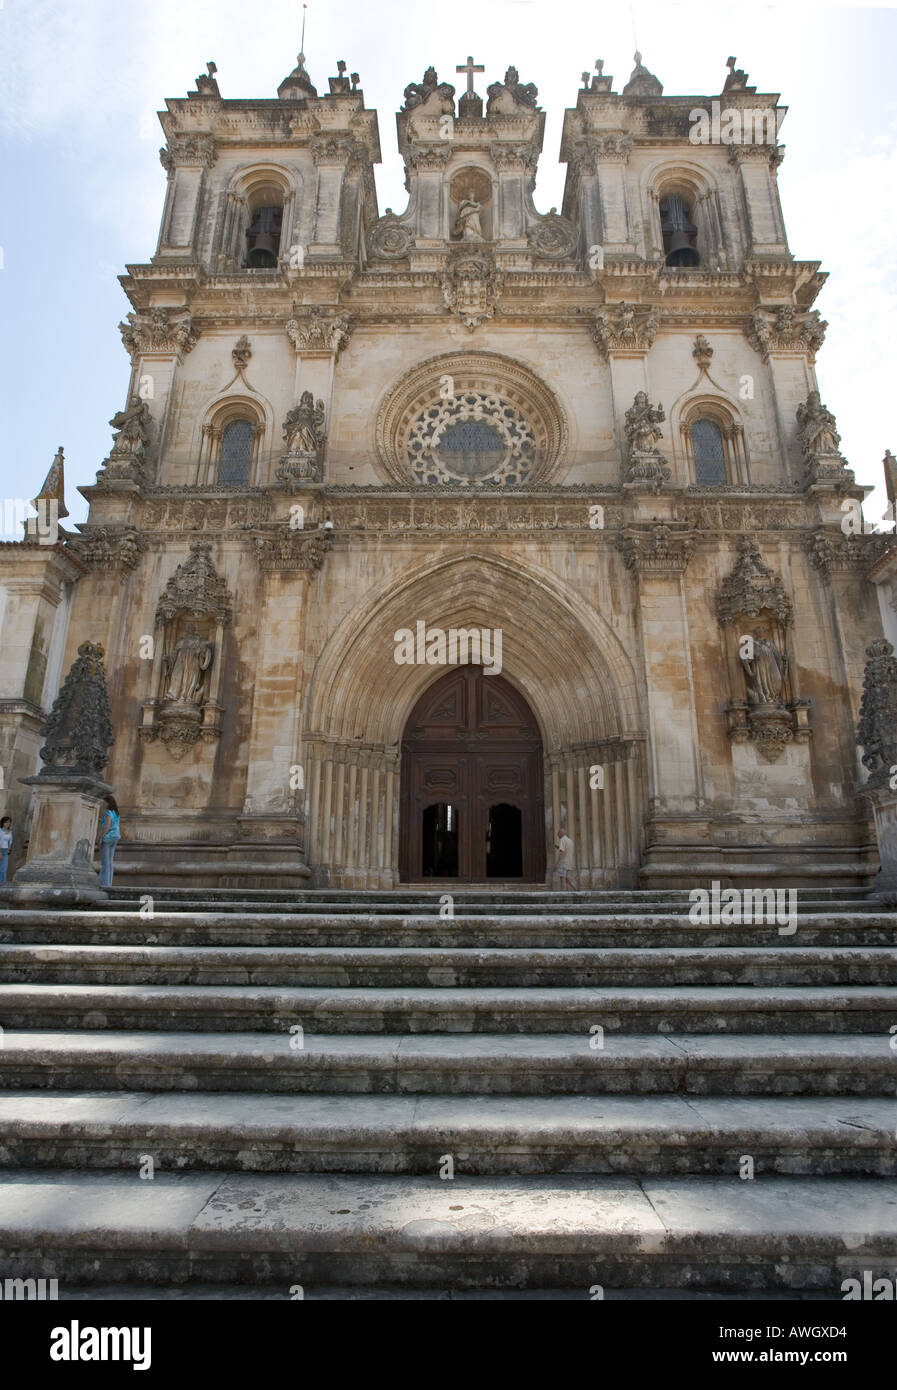 L'extérieur de l'ornate monastery à Alcobaca Portugal Mosterio connu aussi sous le nom de Santa Maria de Alcobaça. Banque D'Images